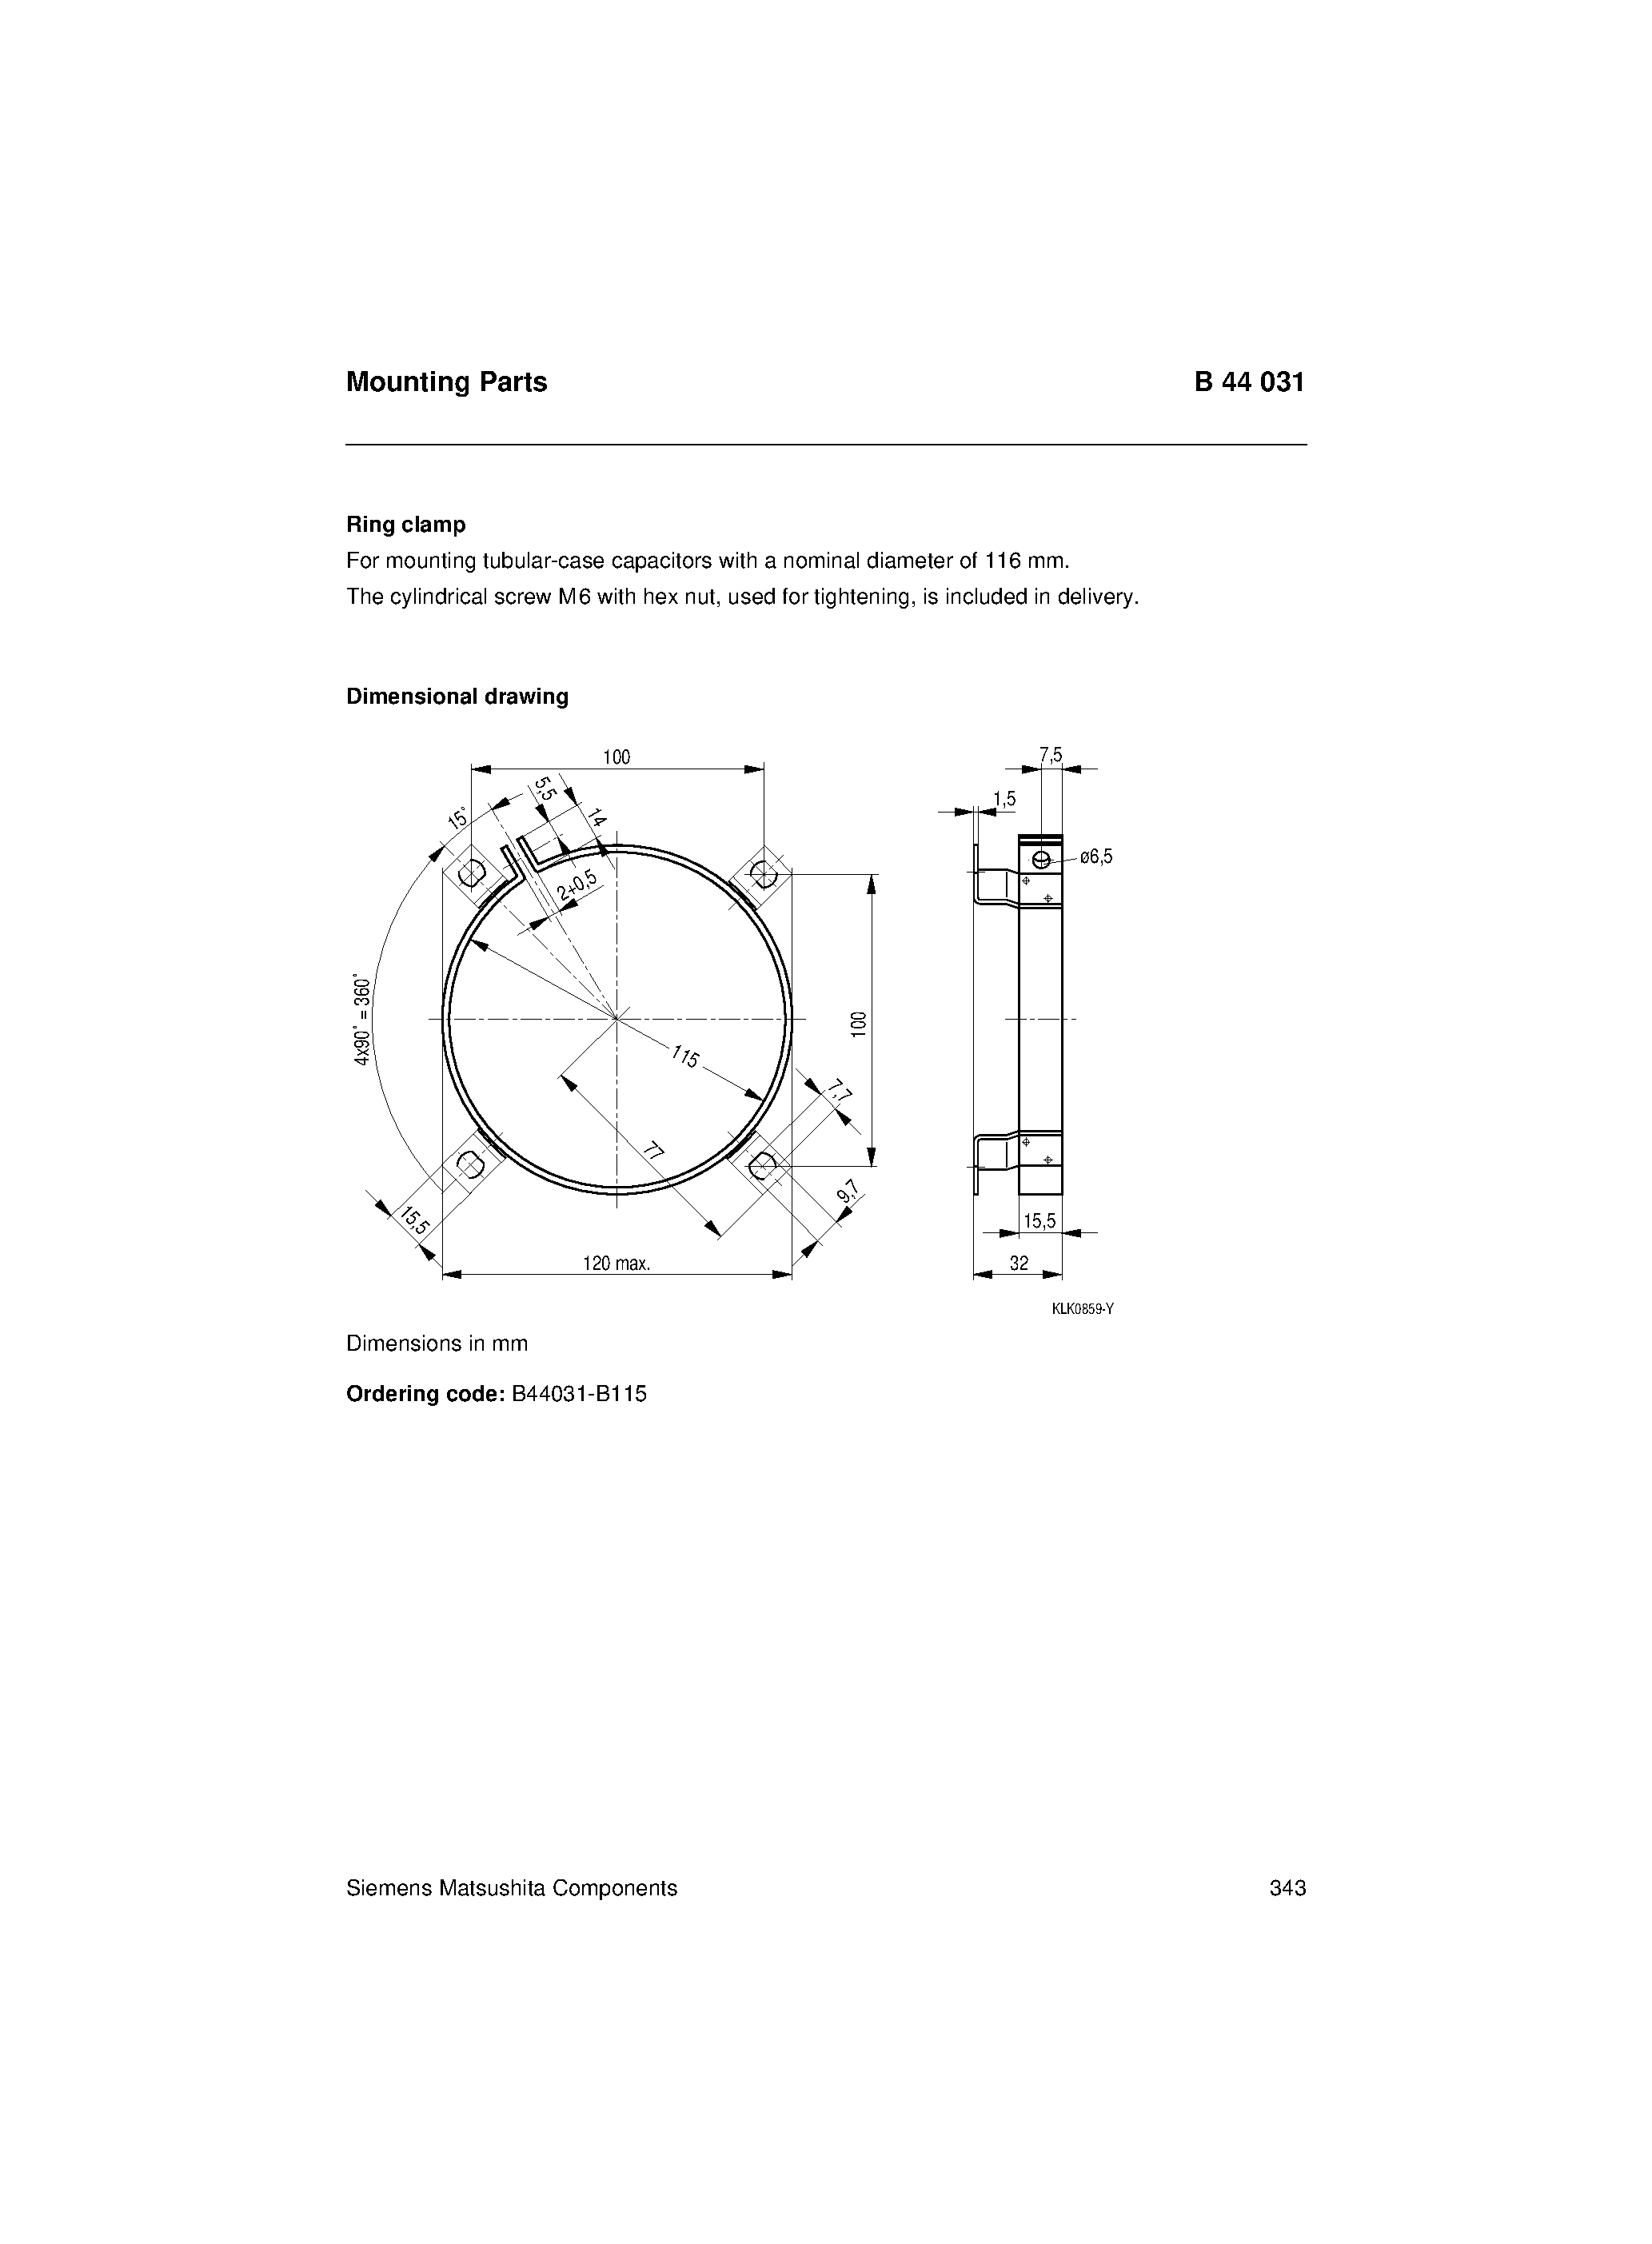 Datasheet B44031 - Mounting Parts page 1